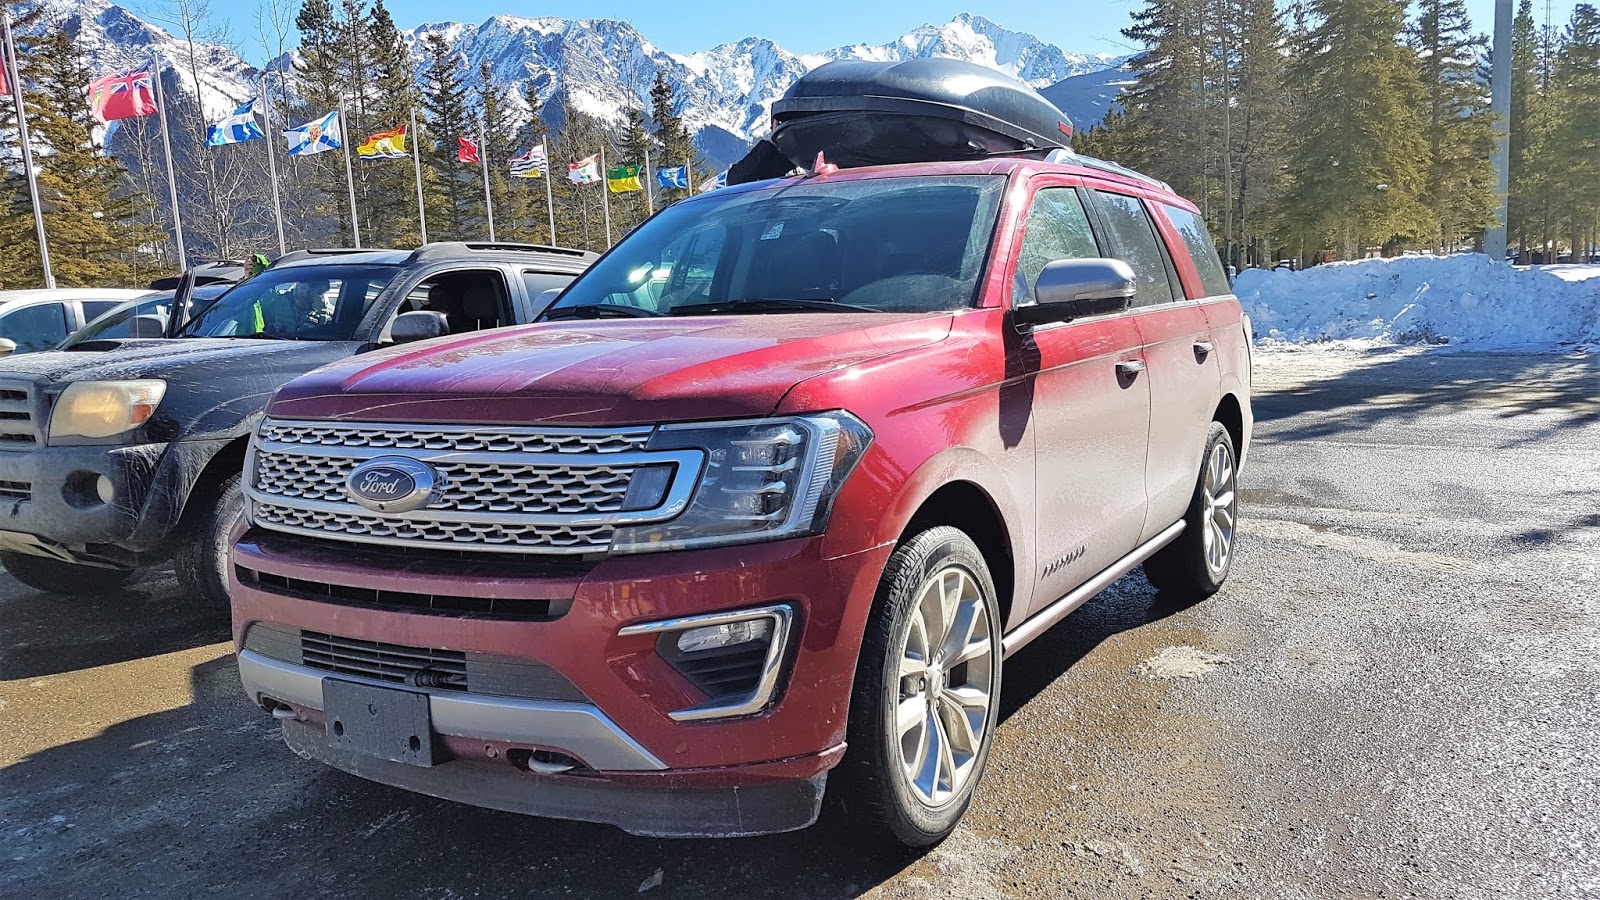 2019 Ford Expedition at Nakiska